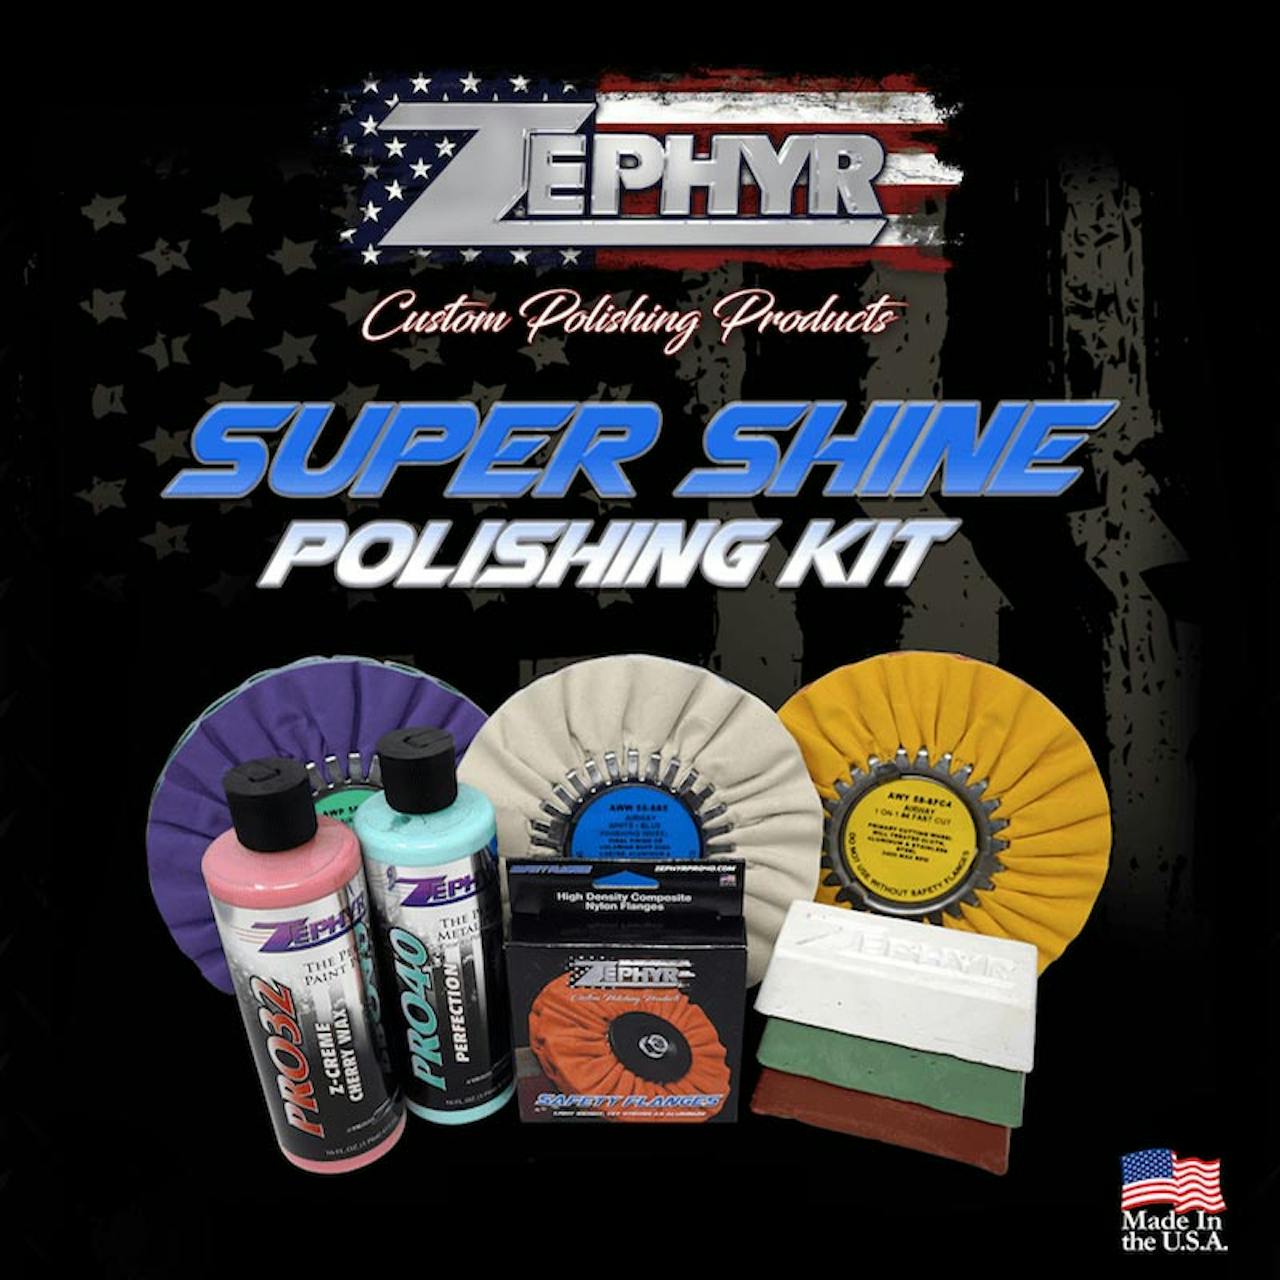 Super Shine Polishing Kit - Zephyr Polishes